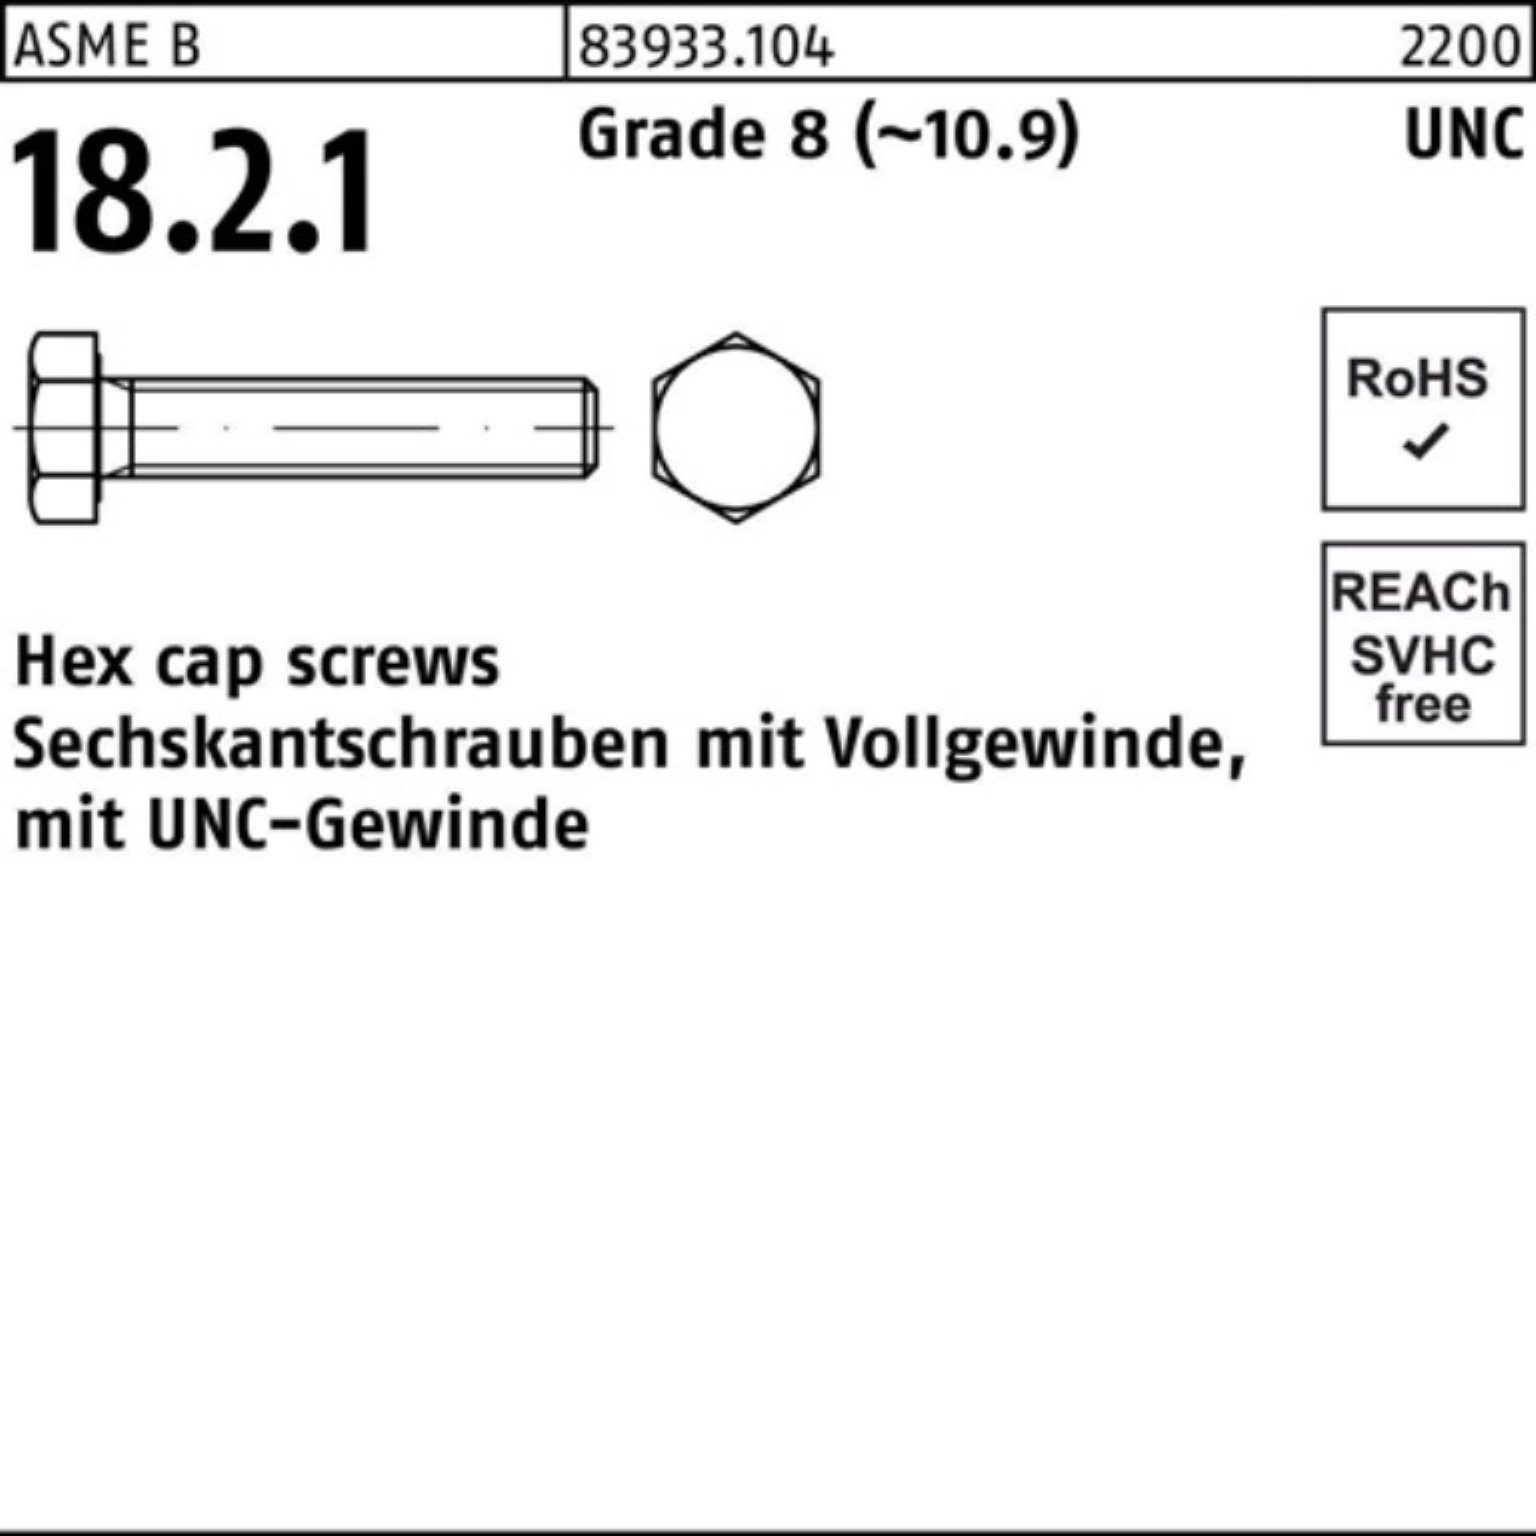 Reyher Sechskantschraube 100er Pack Sechskantschraube R 83933 UNC-Gewinde VG 7/16x 1 1/2 Grade